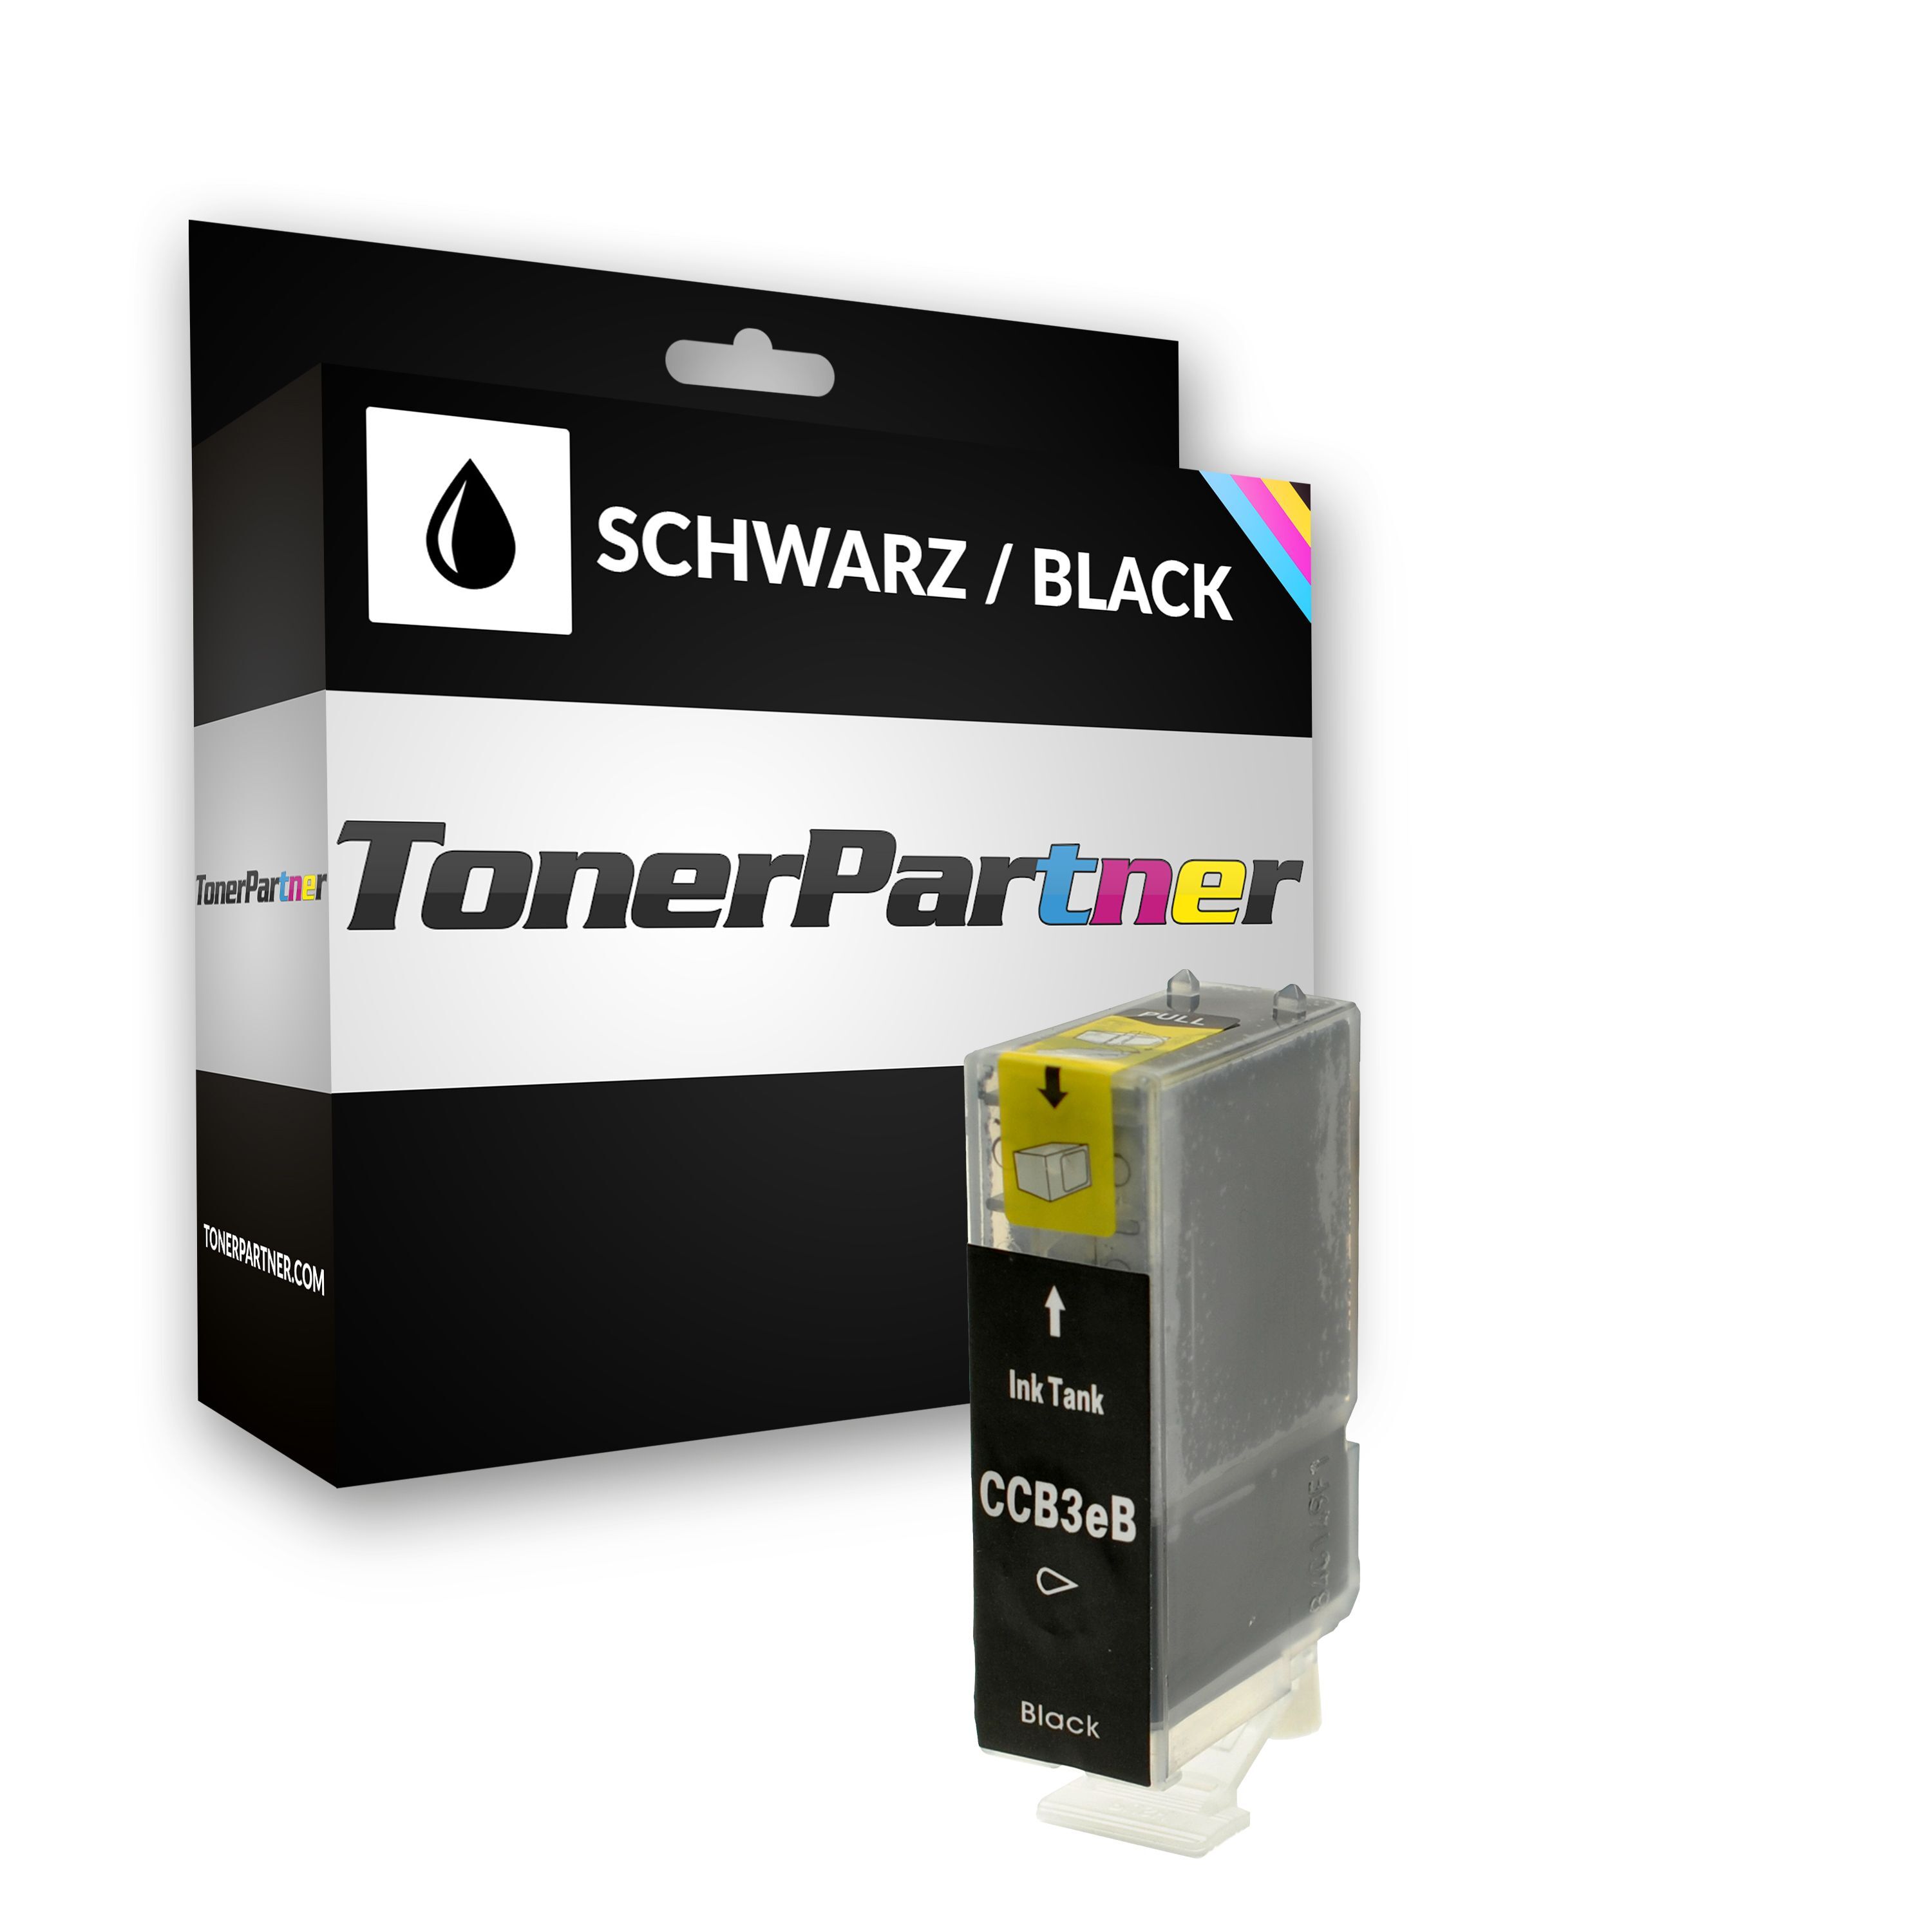 TonerPartner Kompatibel zu Canon S 520 Tintenpatrone (BCI-3 EBK / 4479 A 002) schwarz, 500 Seiten, 0,51 Rp pro Seite, Inhalt: 27 ml von TonerPartner